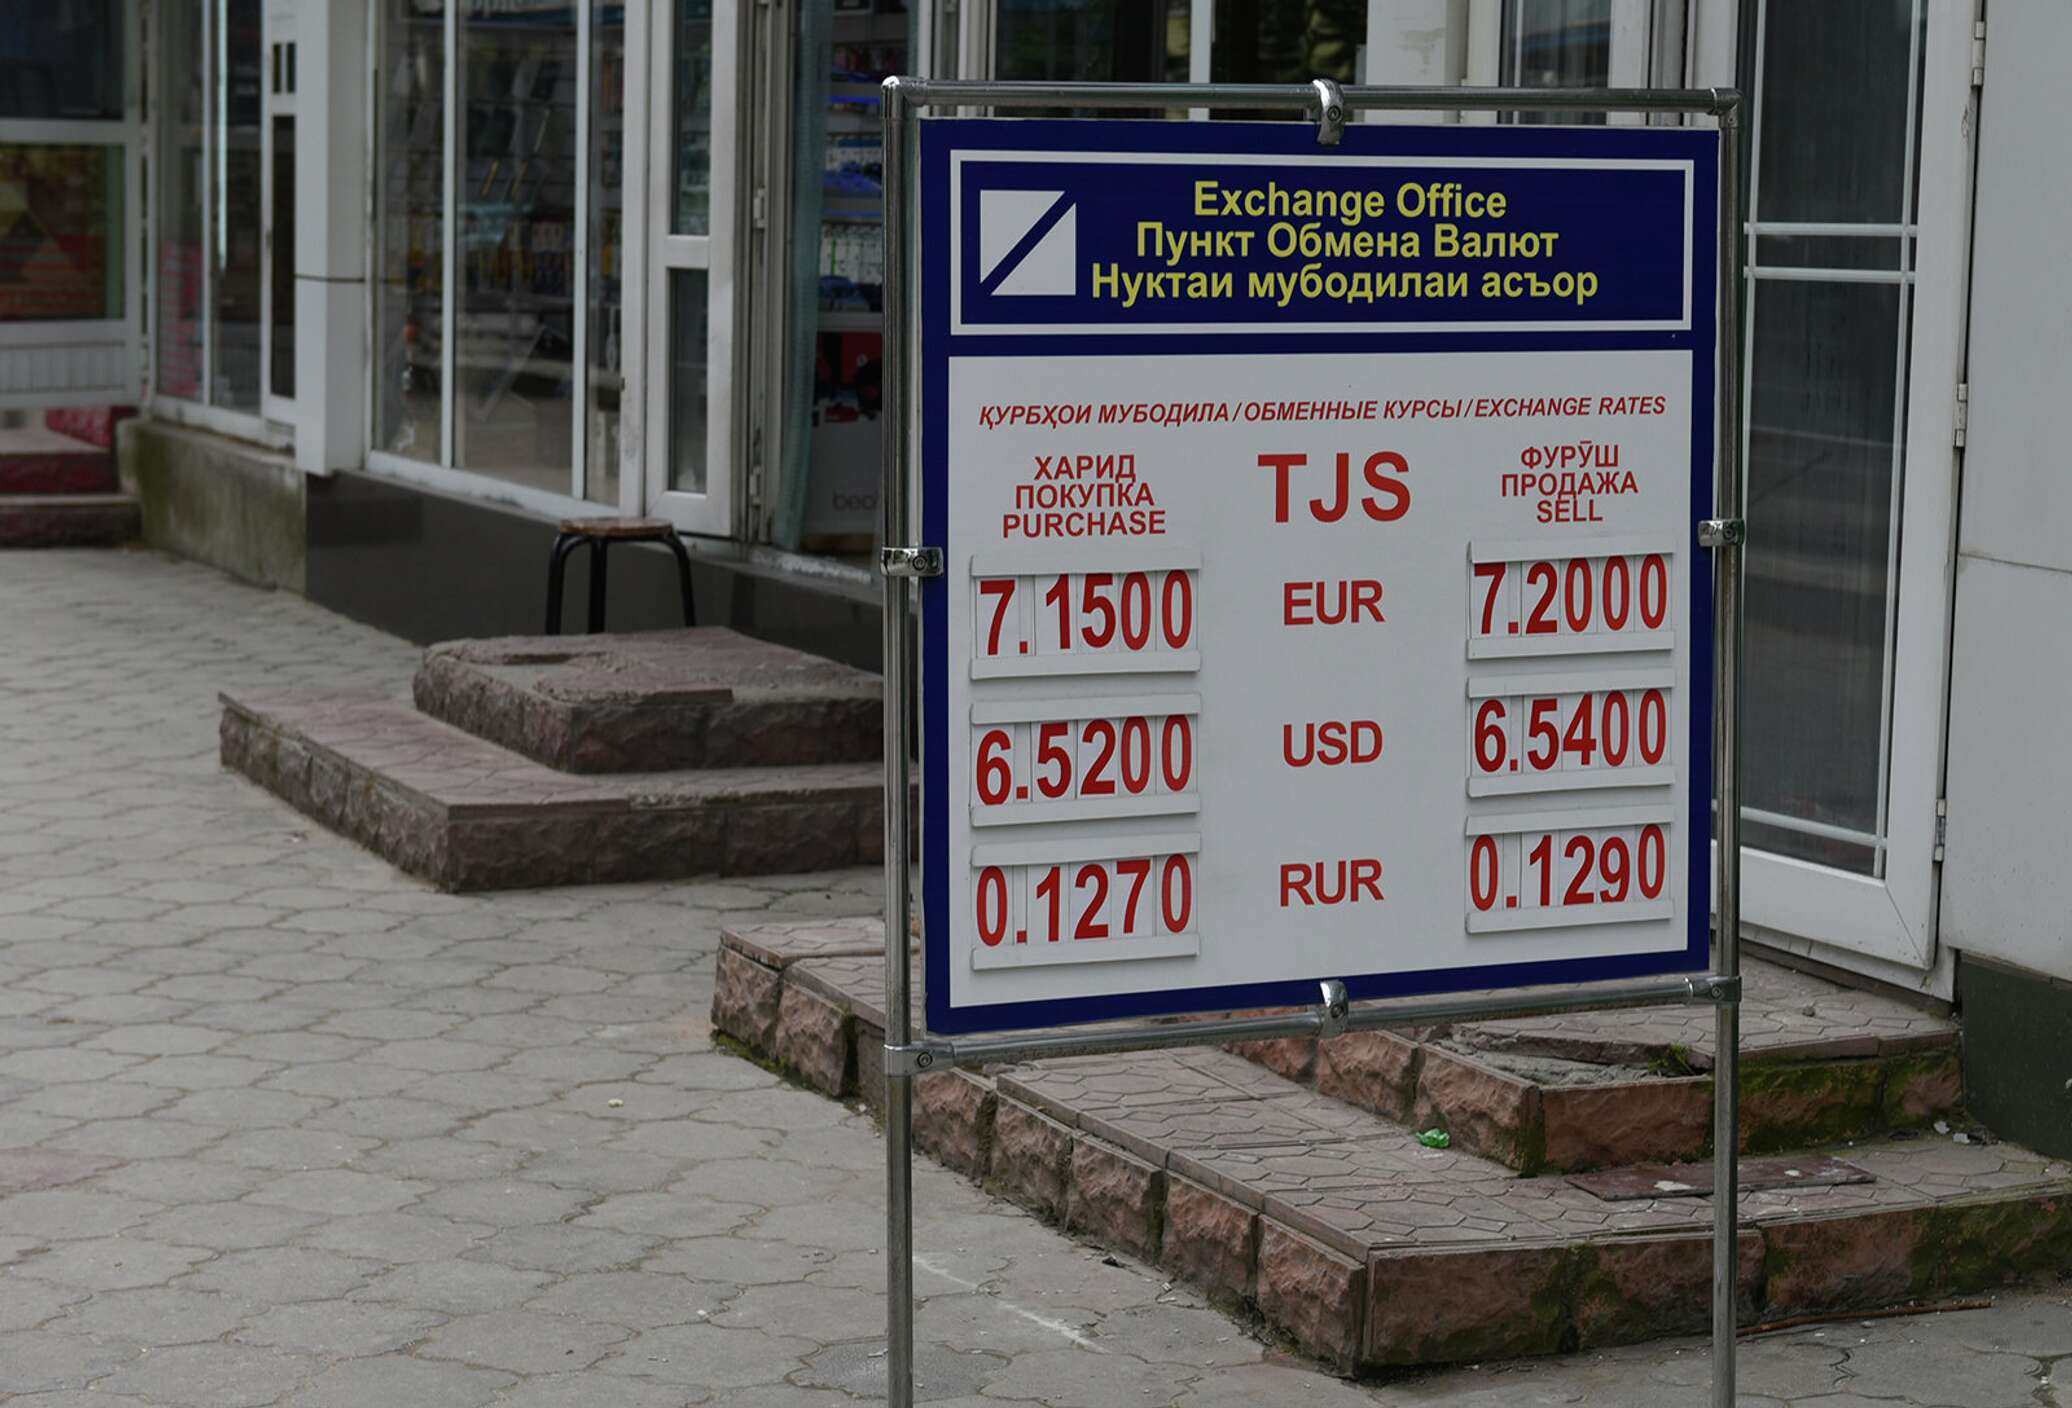 Курсы валют таджикистан на сегодня рубл сомони. Обменный пункт. Обменные пункты в Таджикистане. Курсы валют. Курсы валют в Таджикистане.